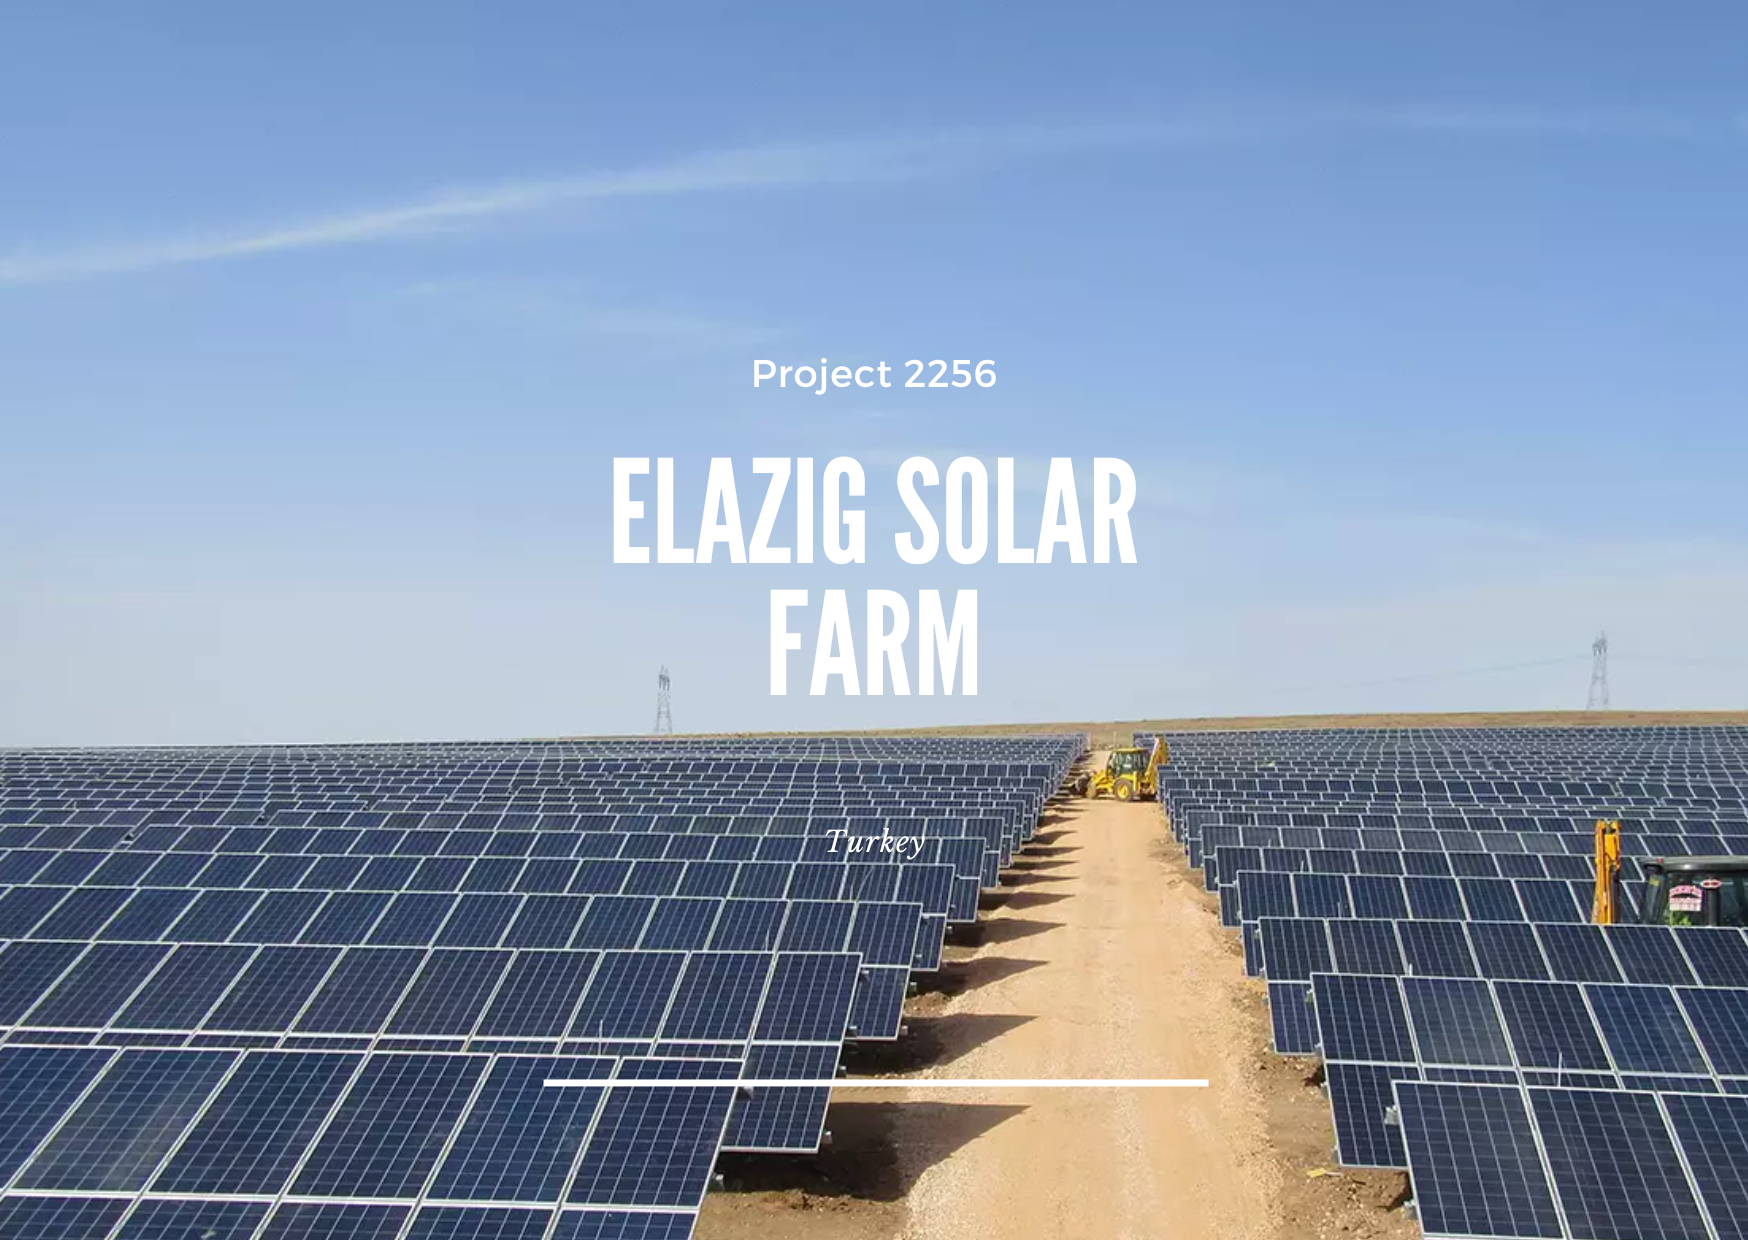 Project 2256 - Elazig Solar Farm - Image 2.png